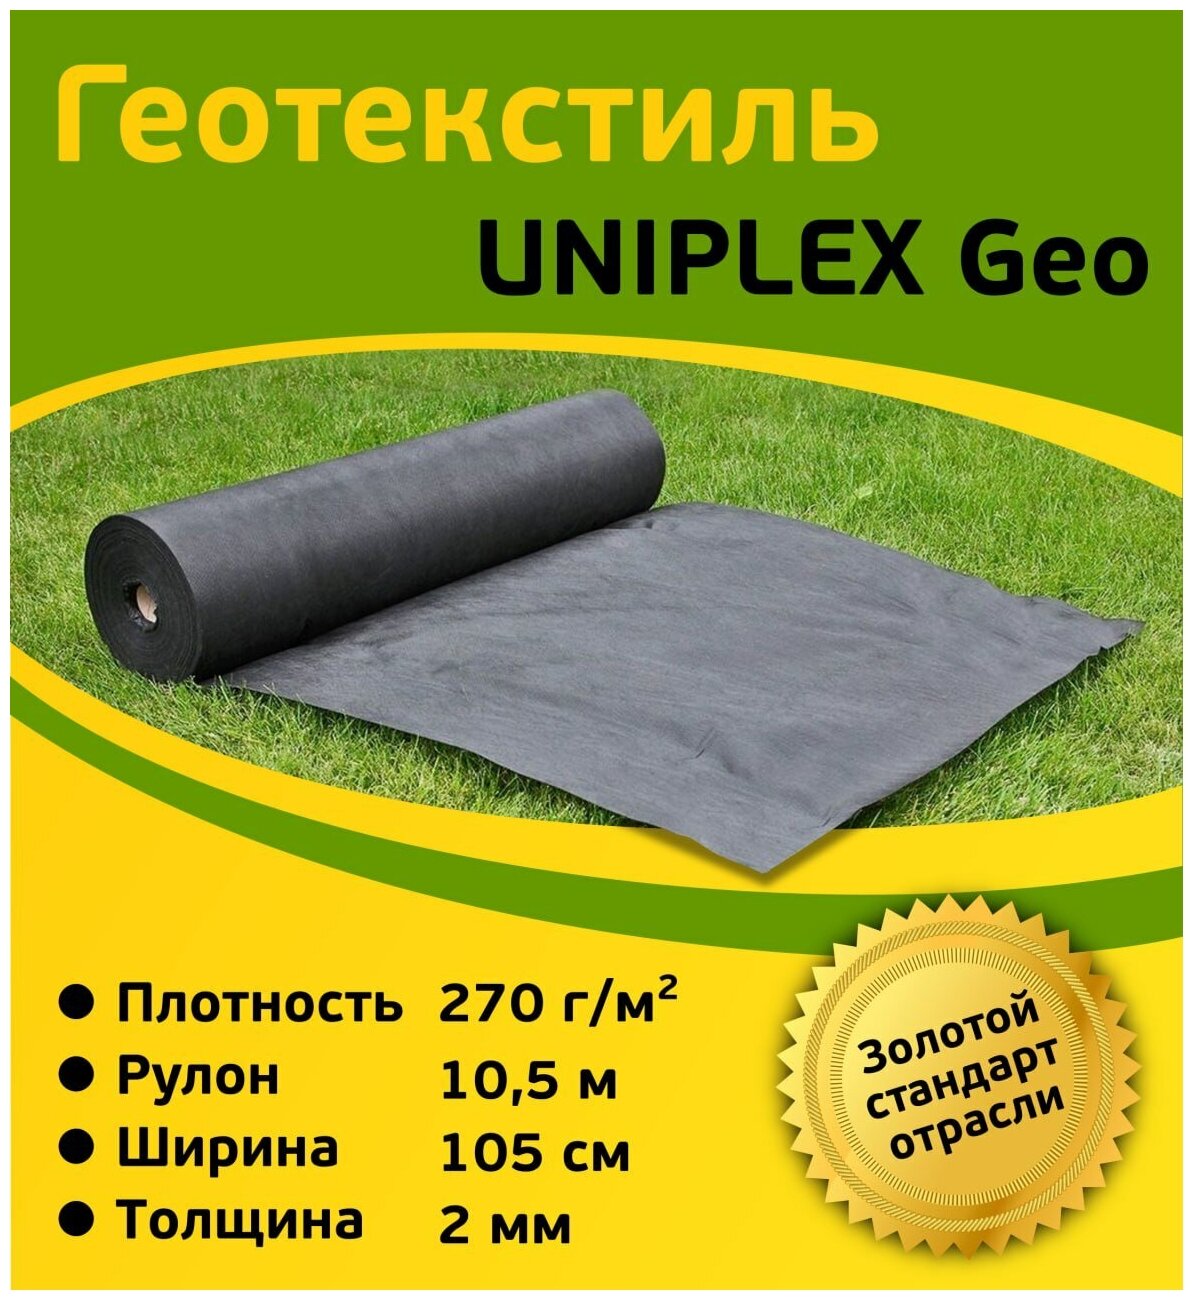 Геотекстиль UNIPLEX Geo укрывной материал черный, садовый, для растений, дорожек, спанбонд, плотность 270 гр/м2, 11 м2